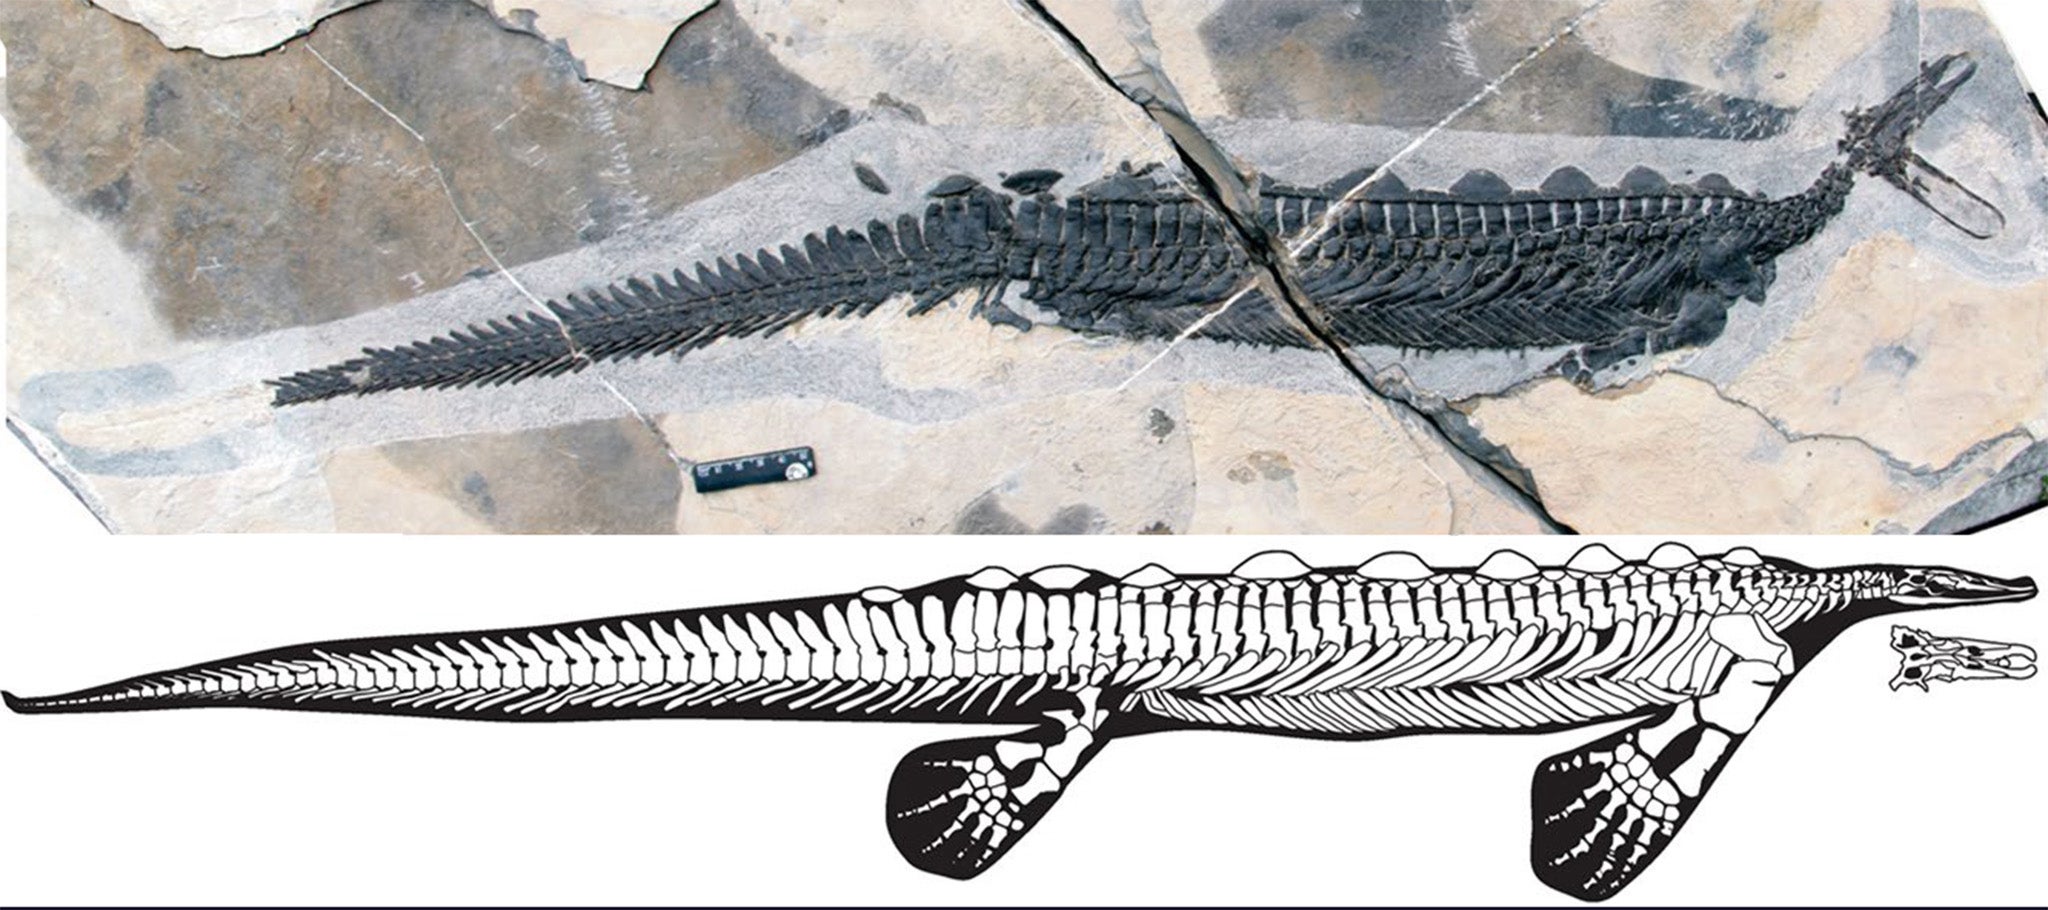 E carrolldongi represent the oldest record of non-visual prey detection in marine reptiles